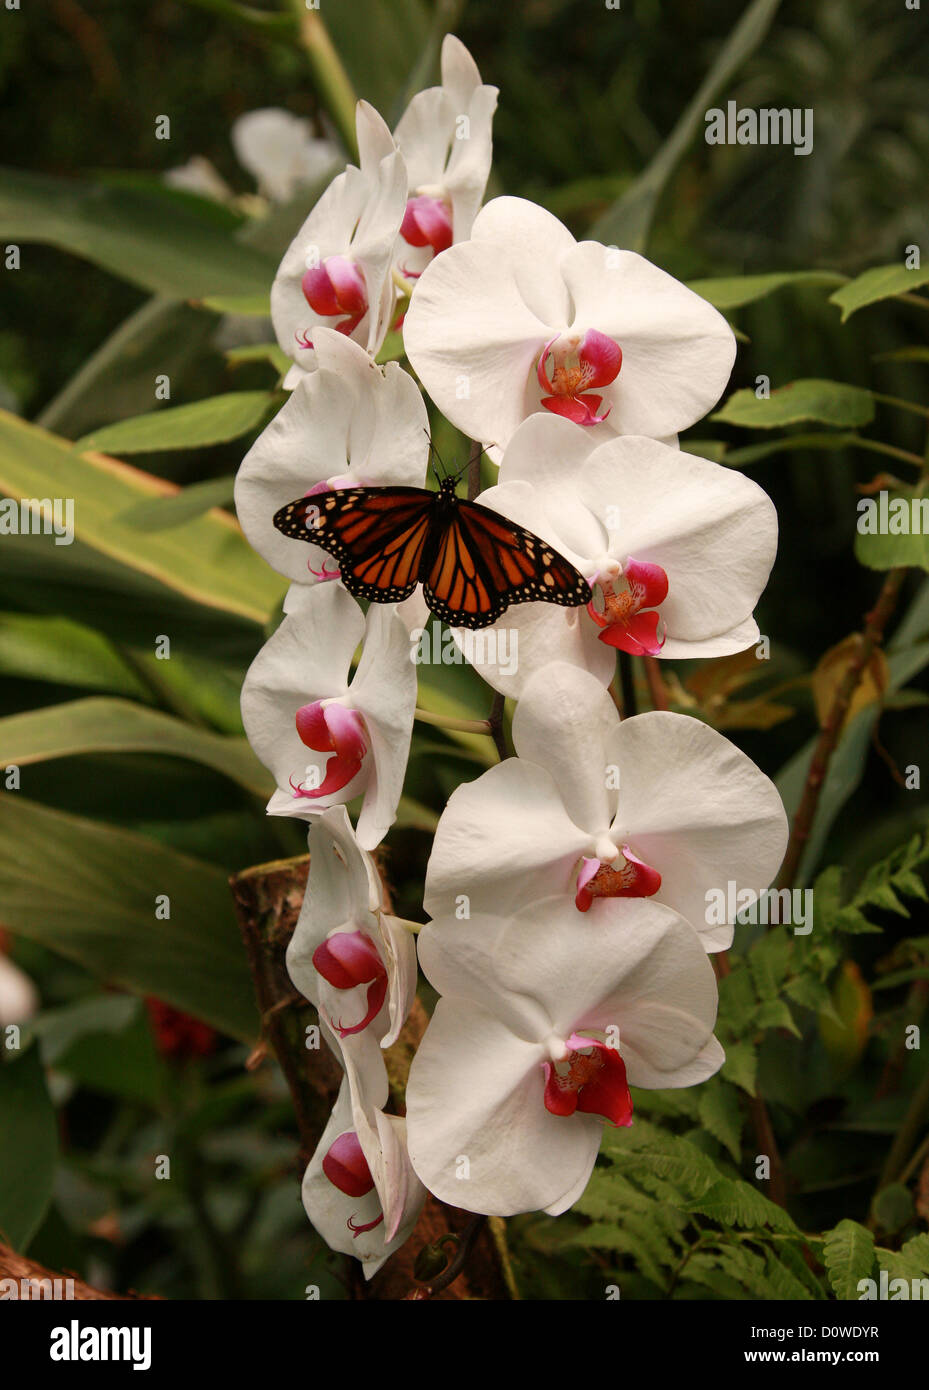 La polilla, cultivar híbridos de orquídeas Phalaenopsis, Orchidaceae, y la Mariposa Monarca, Danaus plexippus, Papilionoidea, Nymphalidae. Foto de stock